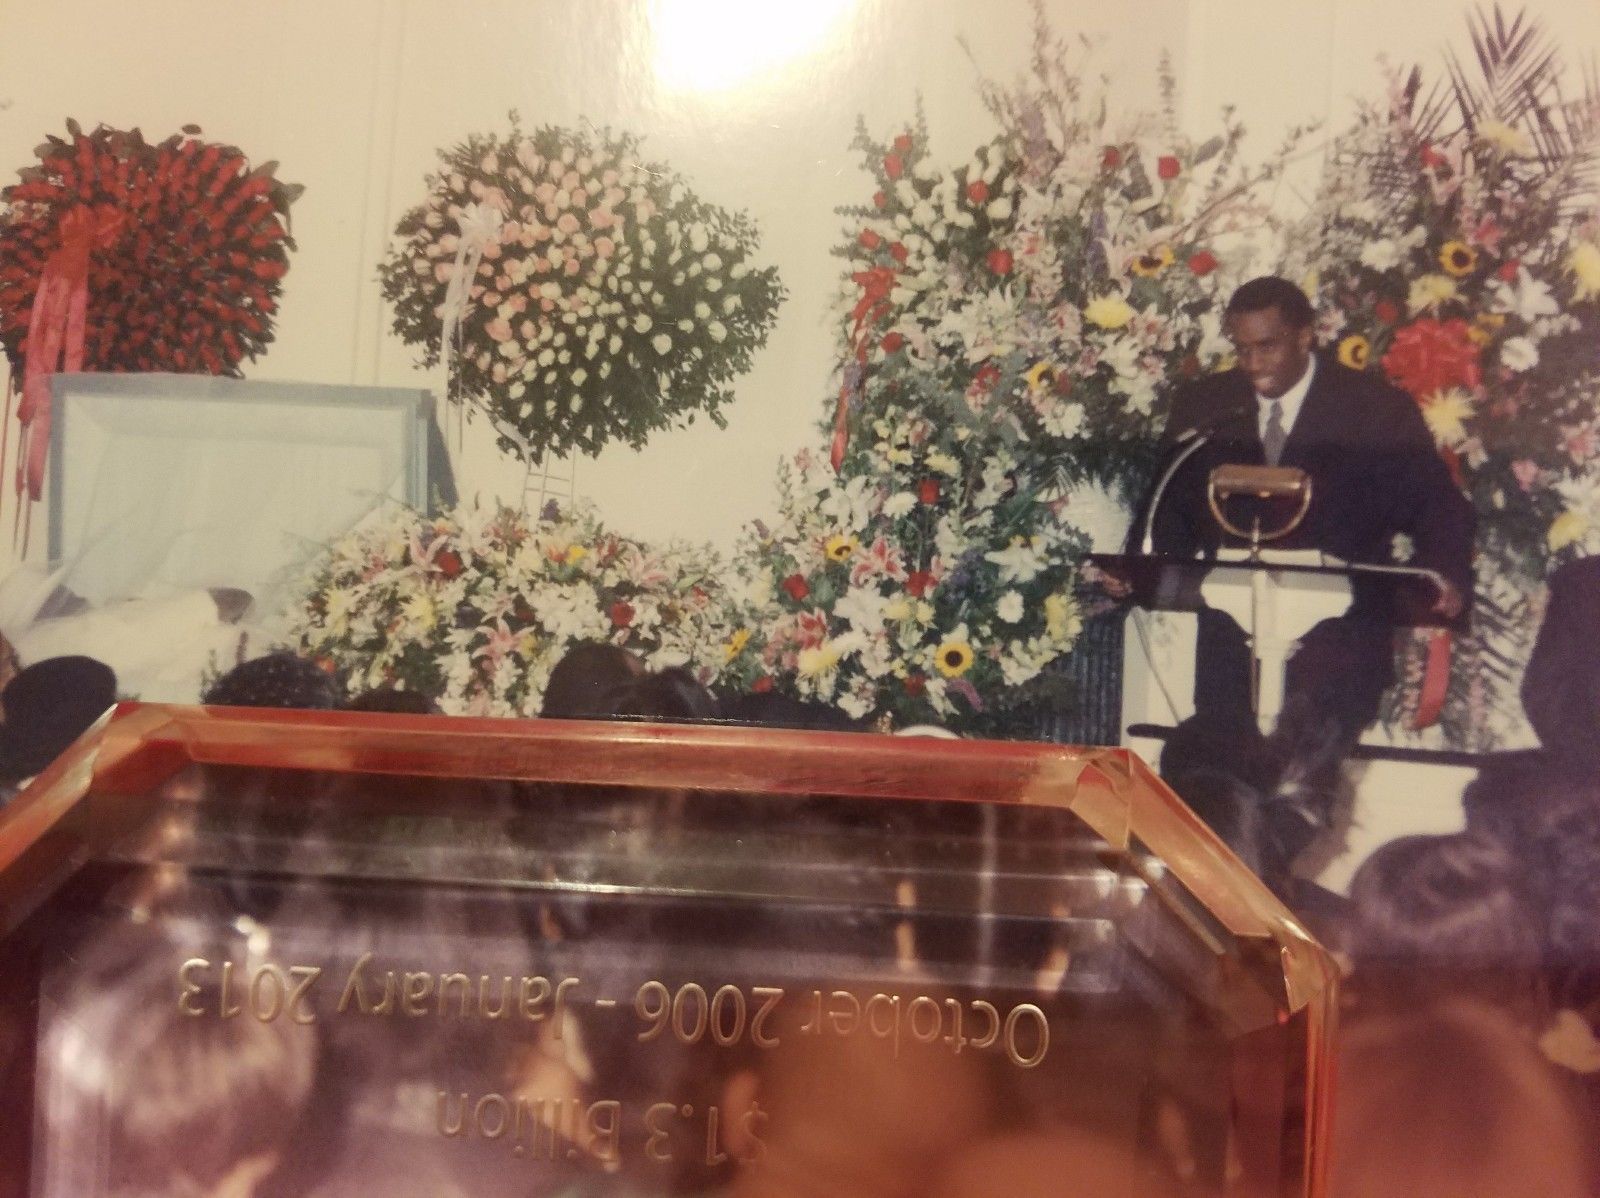 Puffy Combs prend la parole à la veillée funèbre de Notorious B.I.G. Sur la gauche de la photo, on peut voir le couvercle du cercueil ouvert. Notorious a été enterré vêtu de blanc et dans un cercueil blanc. Photo : The Coli Forum.